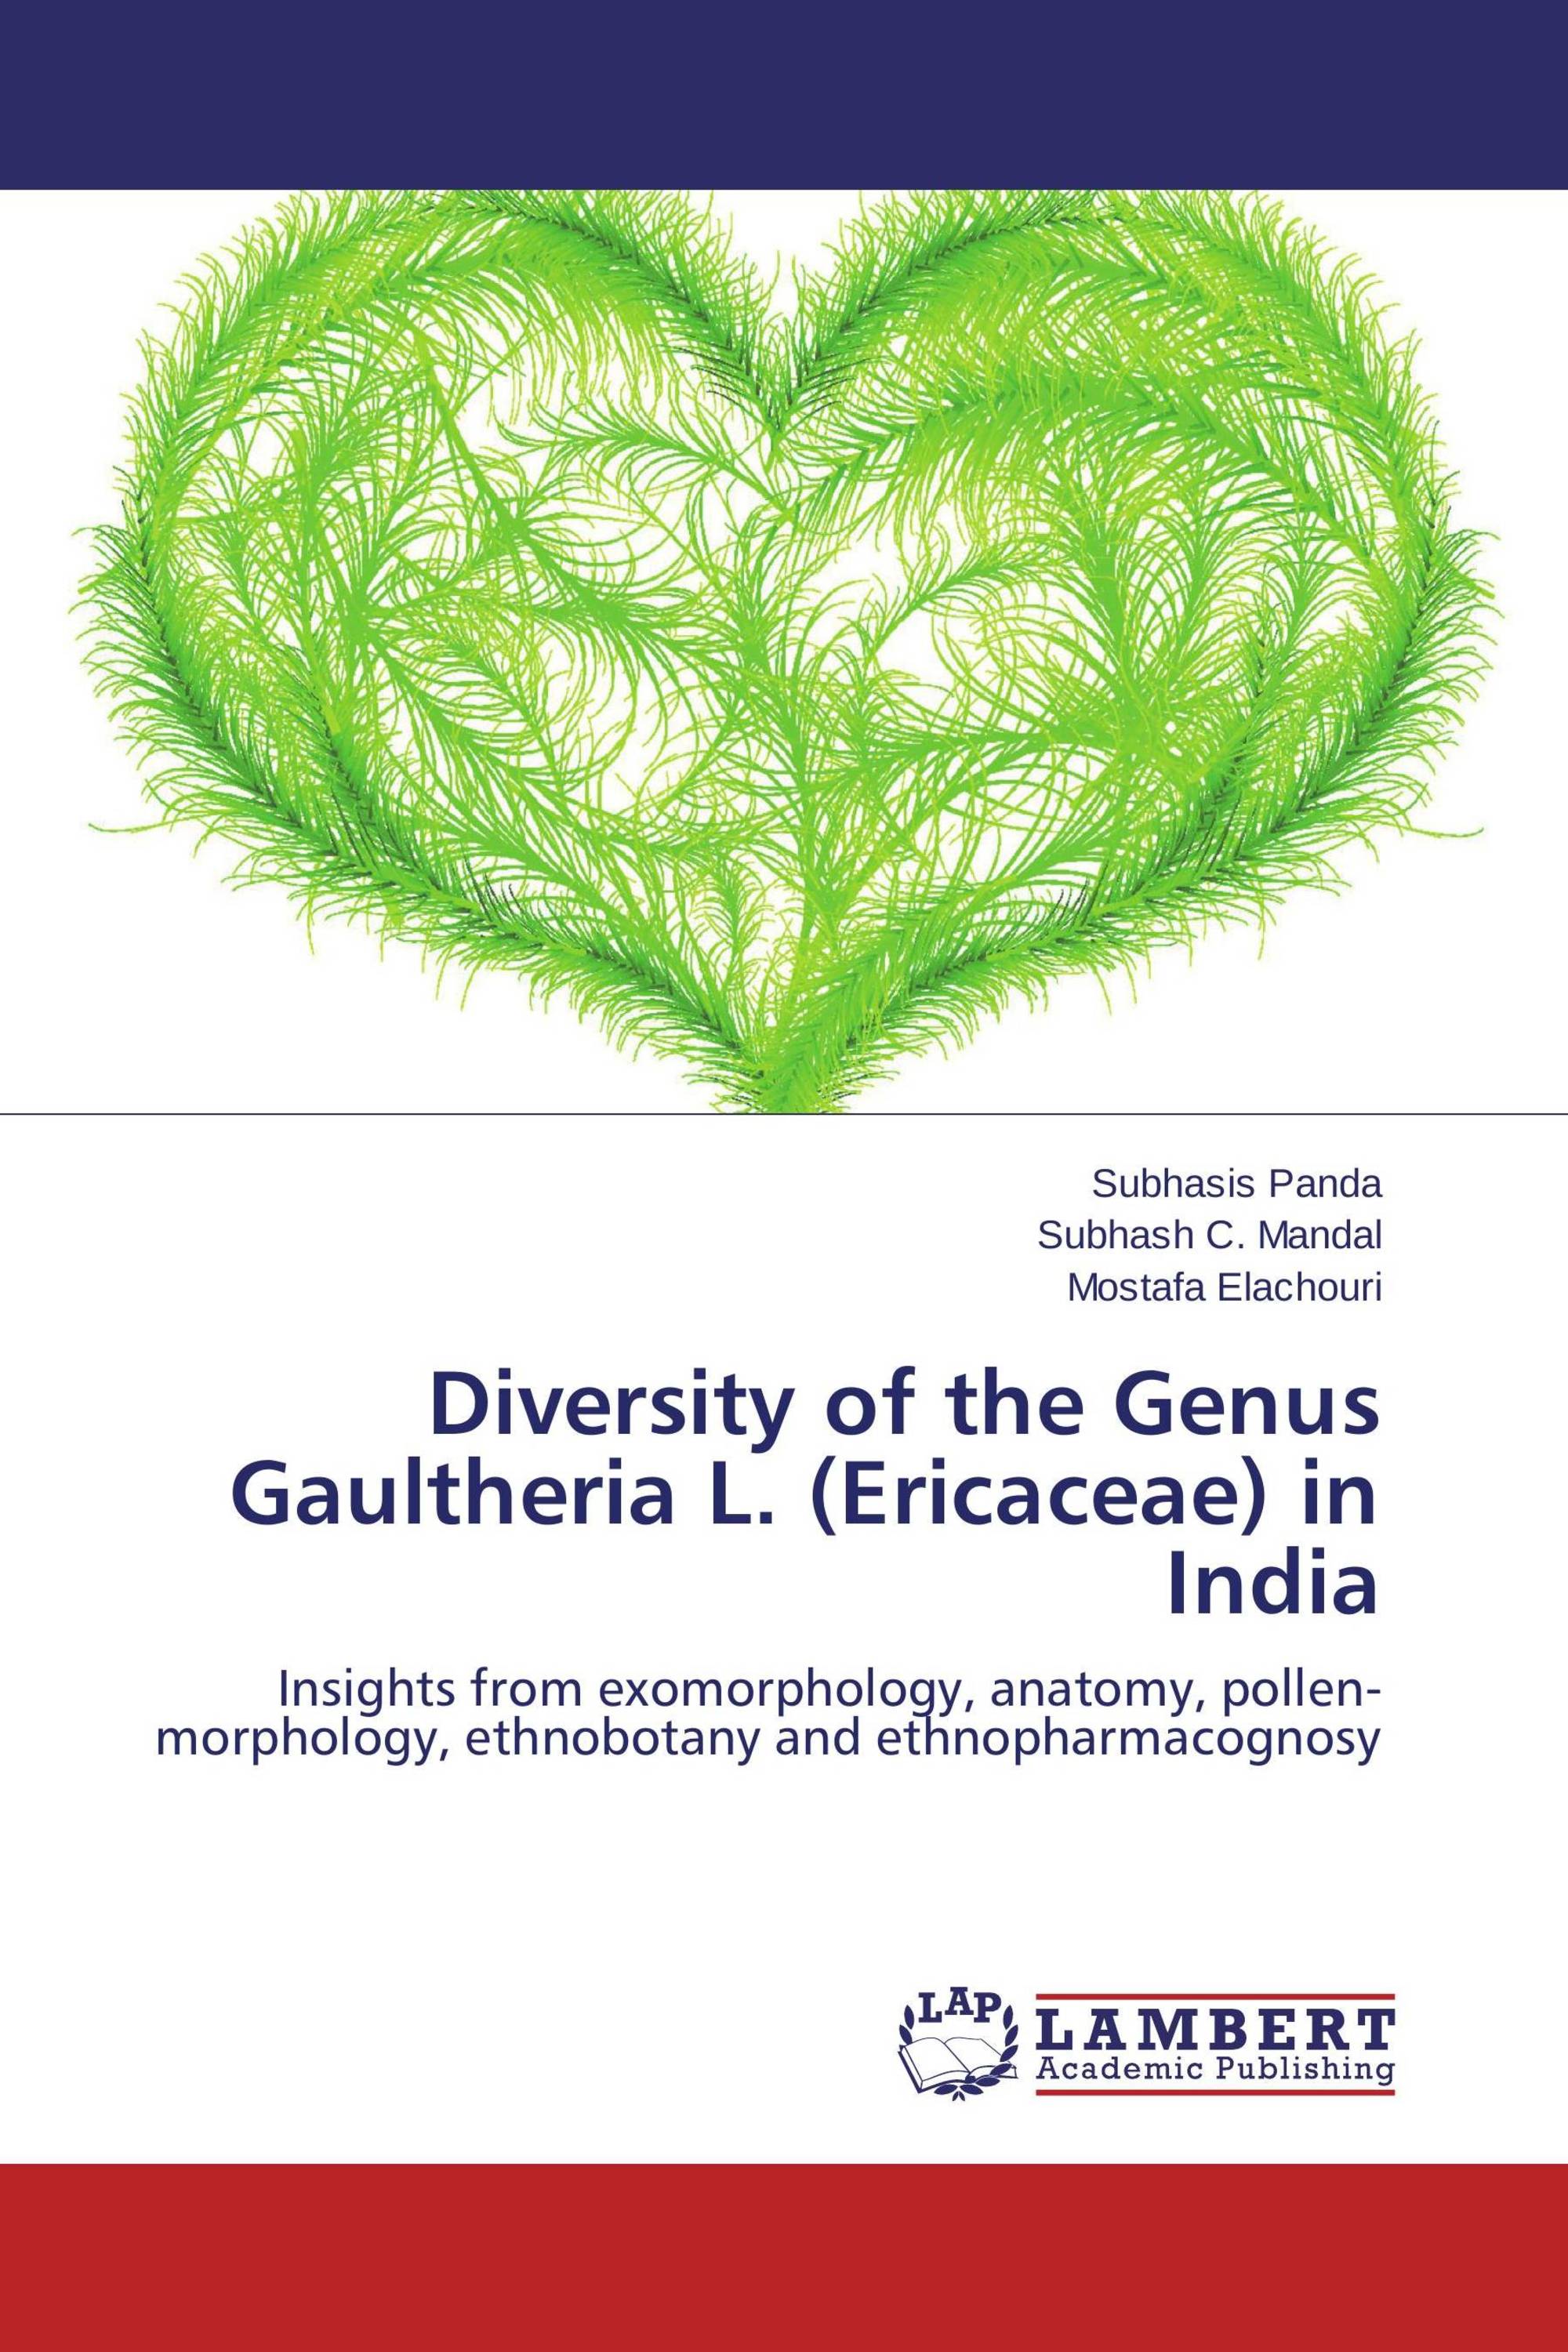 Diversity of the Genus Gaultheria L. (Ericaceae) in India